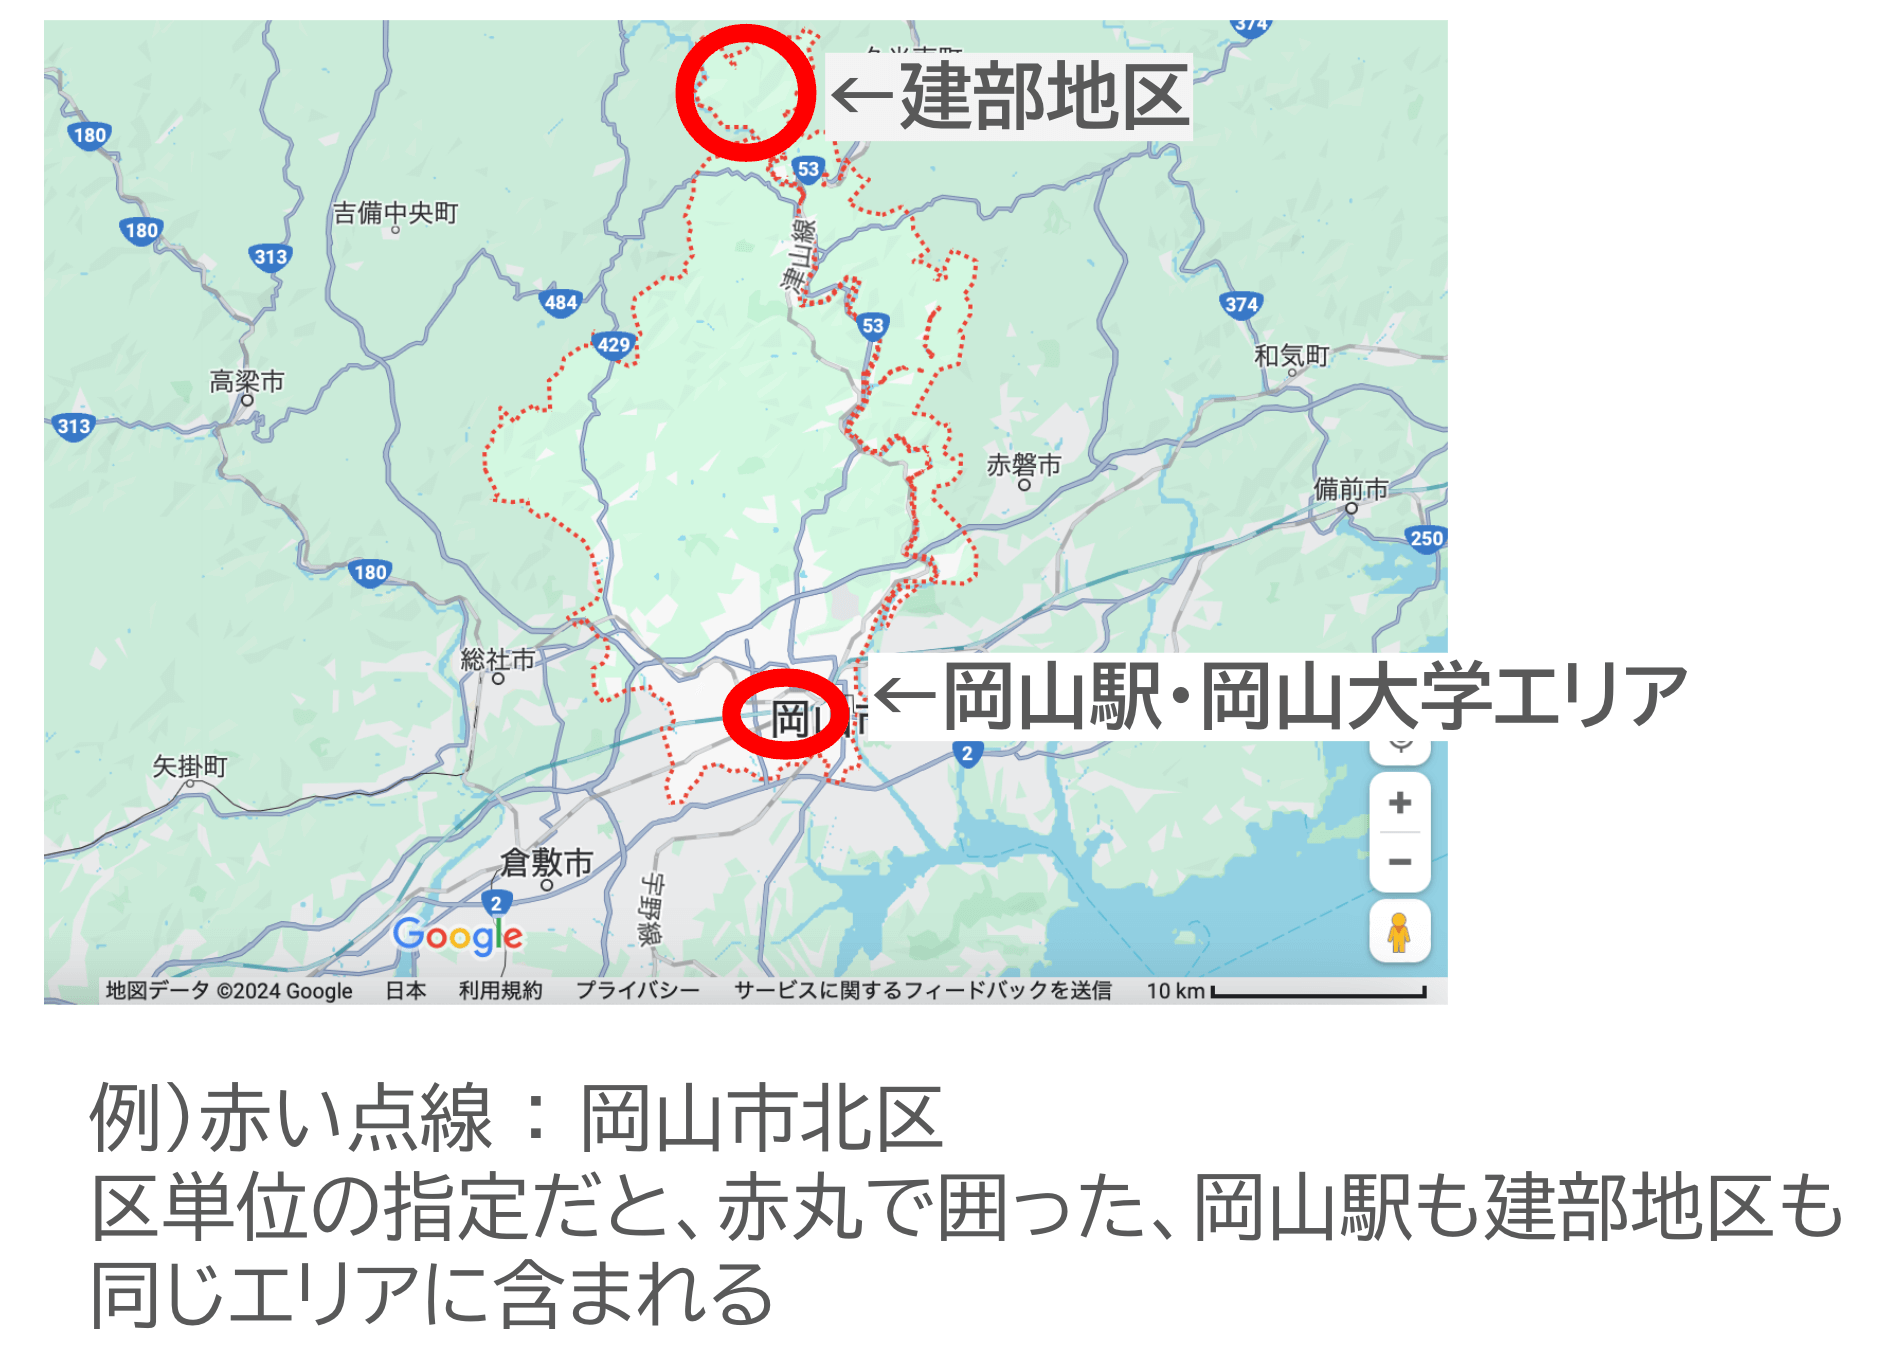 岡山市北区で絞り込むと、岡山駅・岡山大学エリアと建部町が同じエリアに含まれてしまう